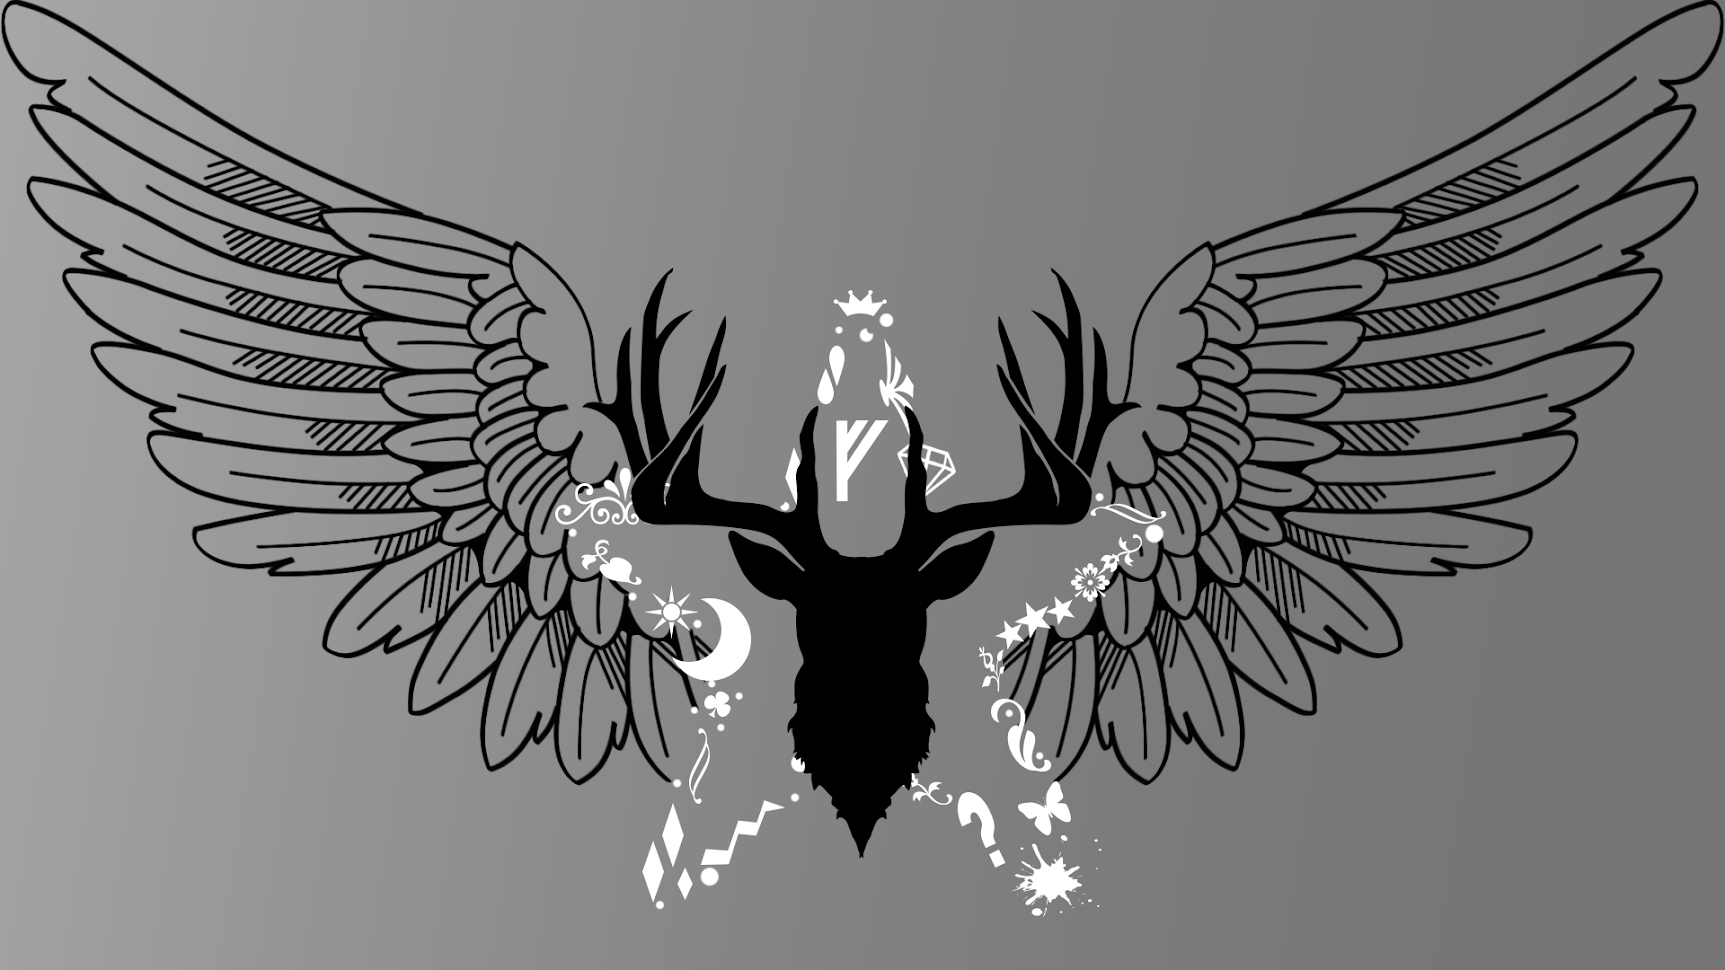 General 1725x970 wings stars Buck deer gray doodle line art black